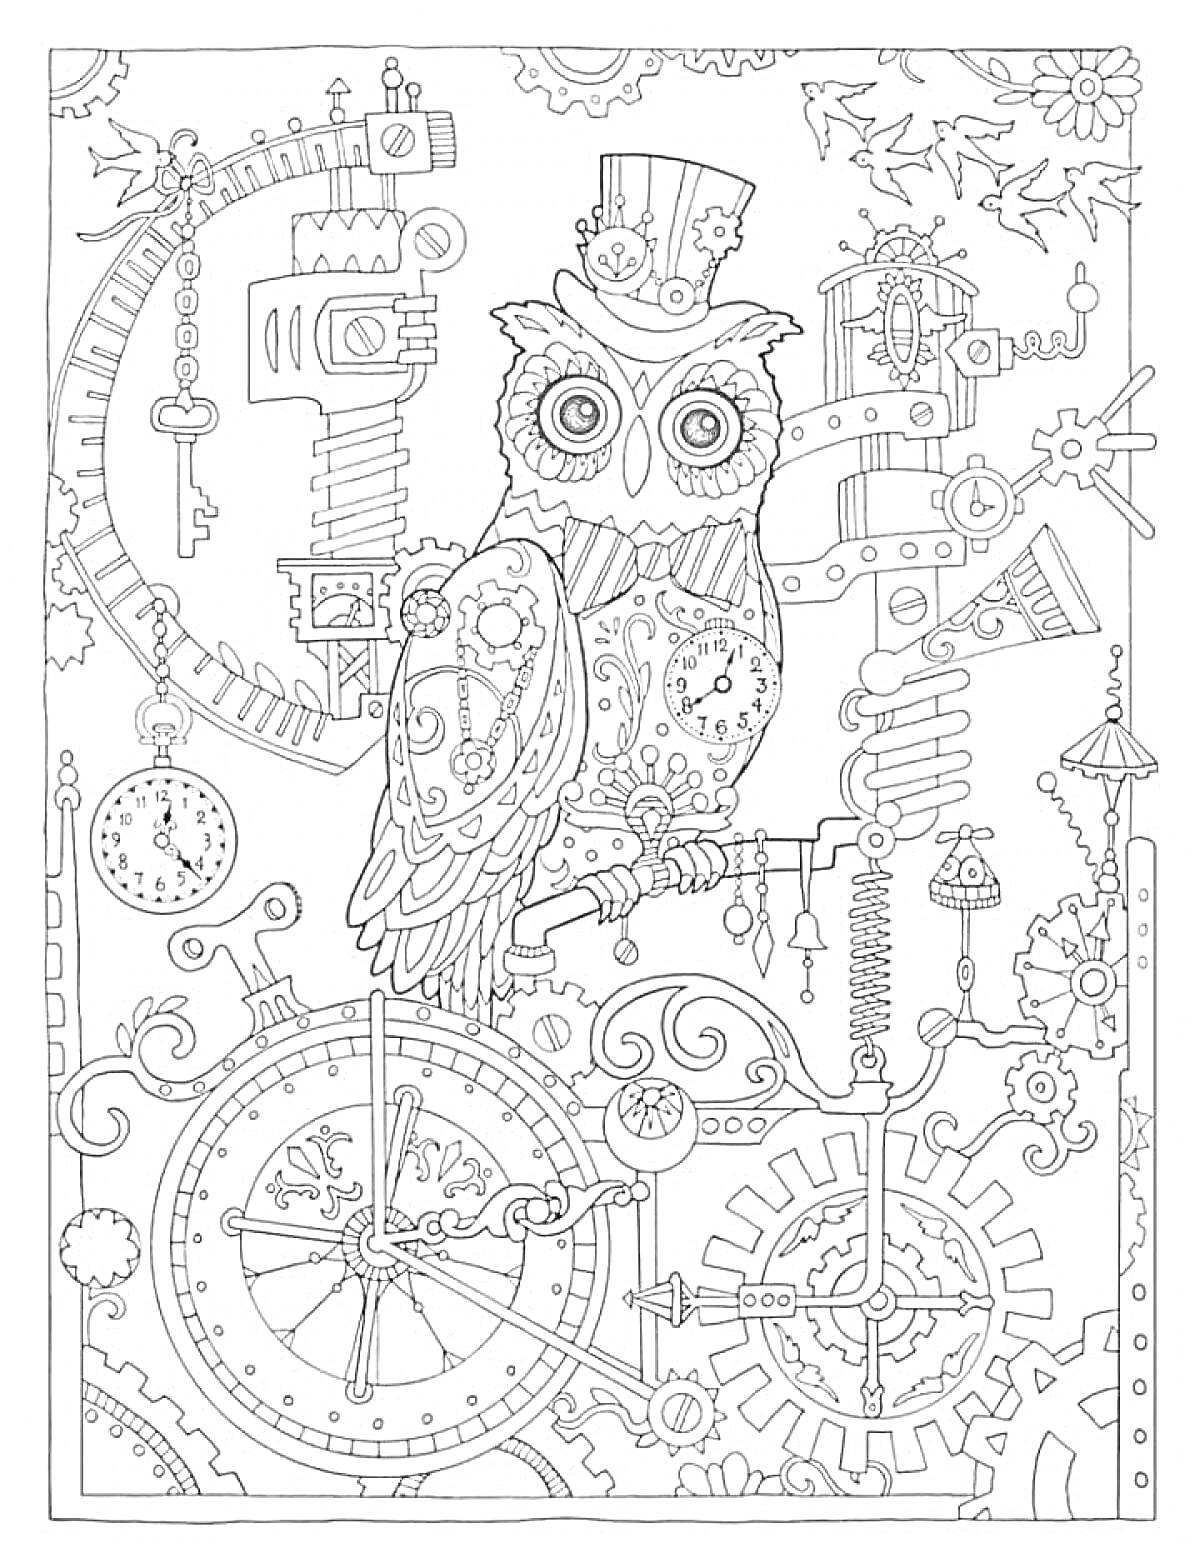 Антистресс раскраска с совой в цилиндре среди шестеренок, часов и механизмов